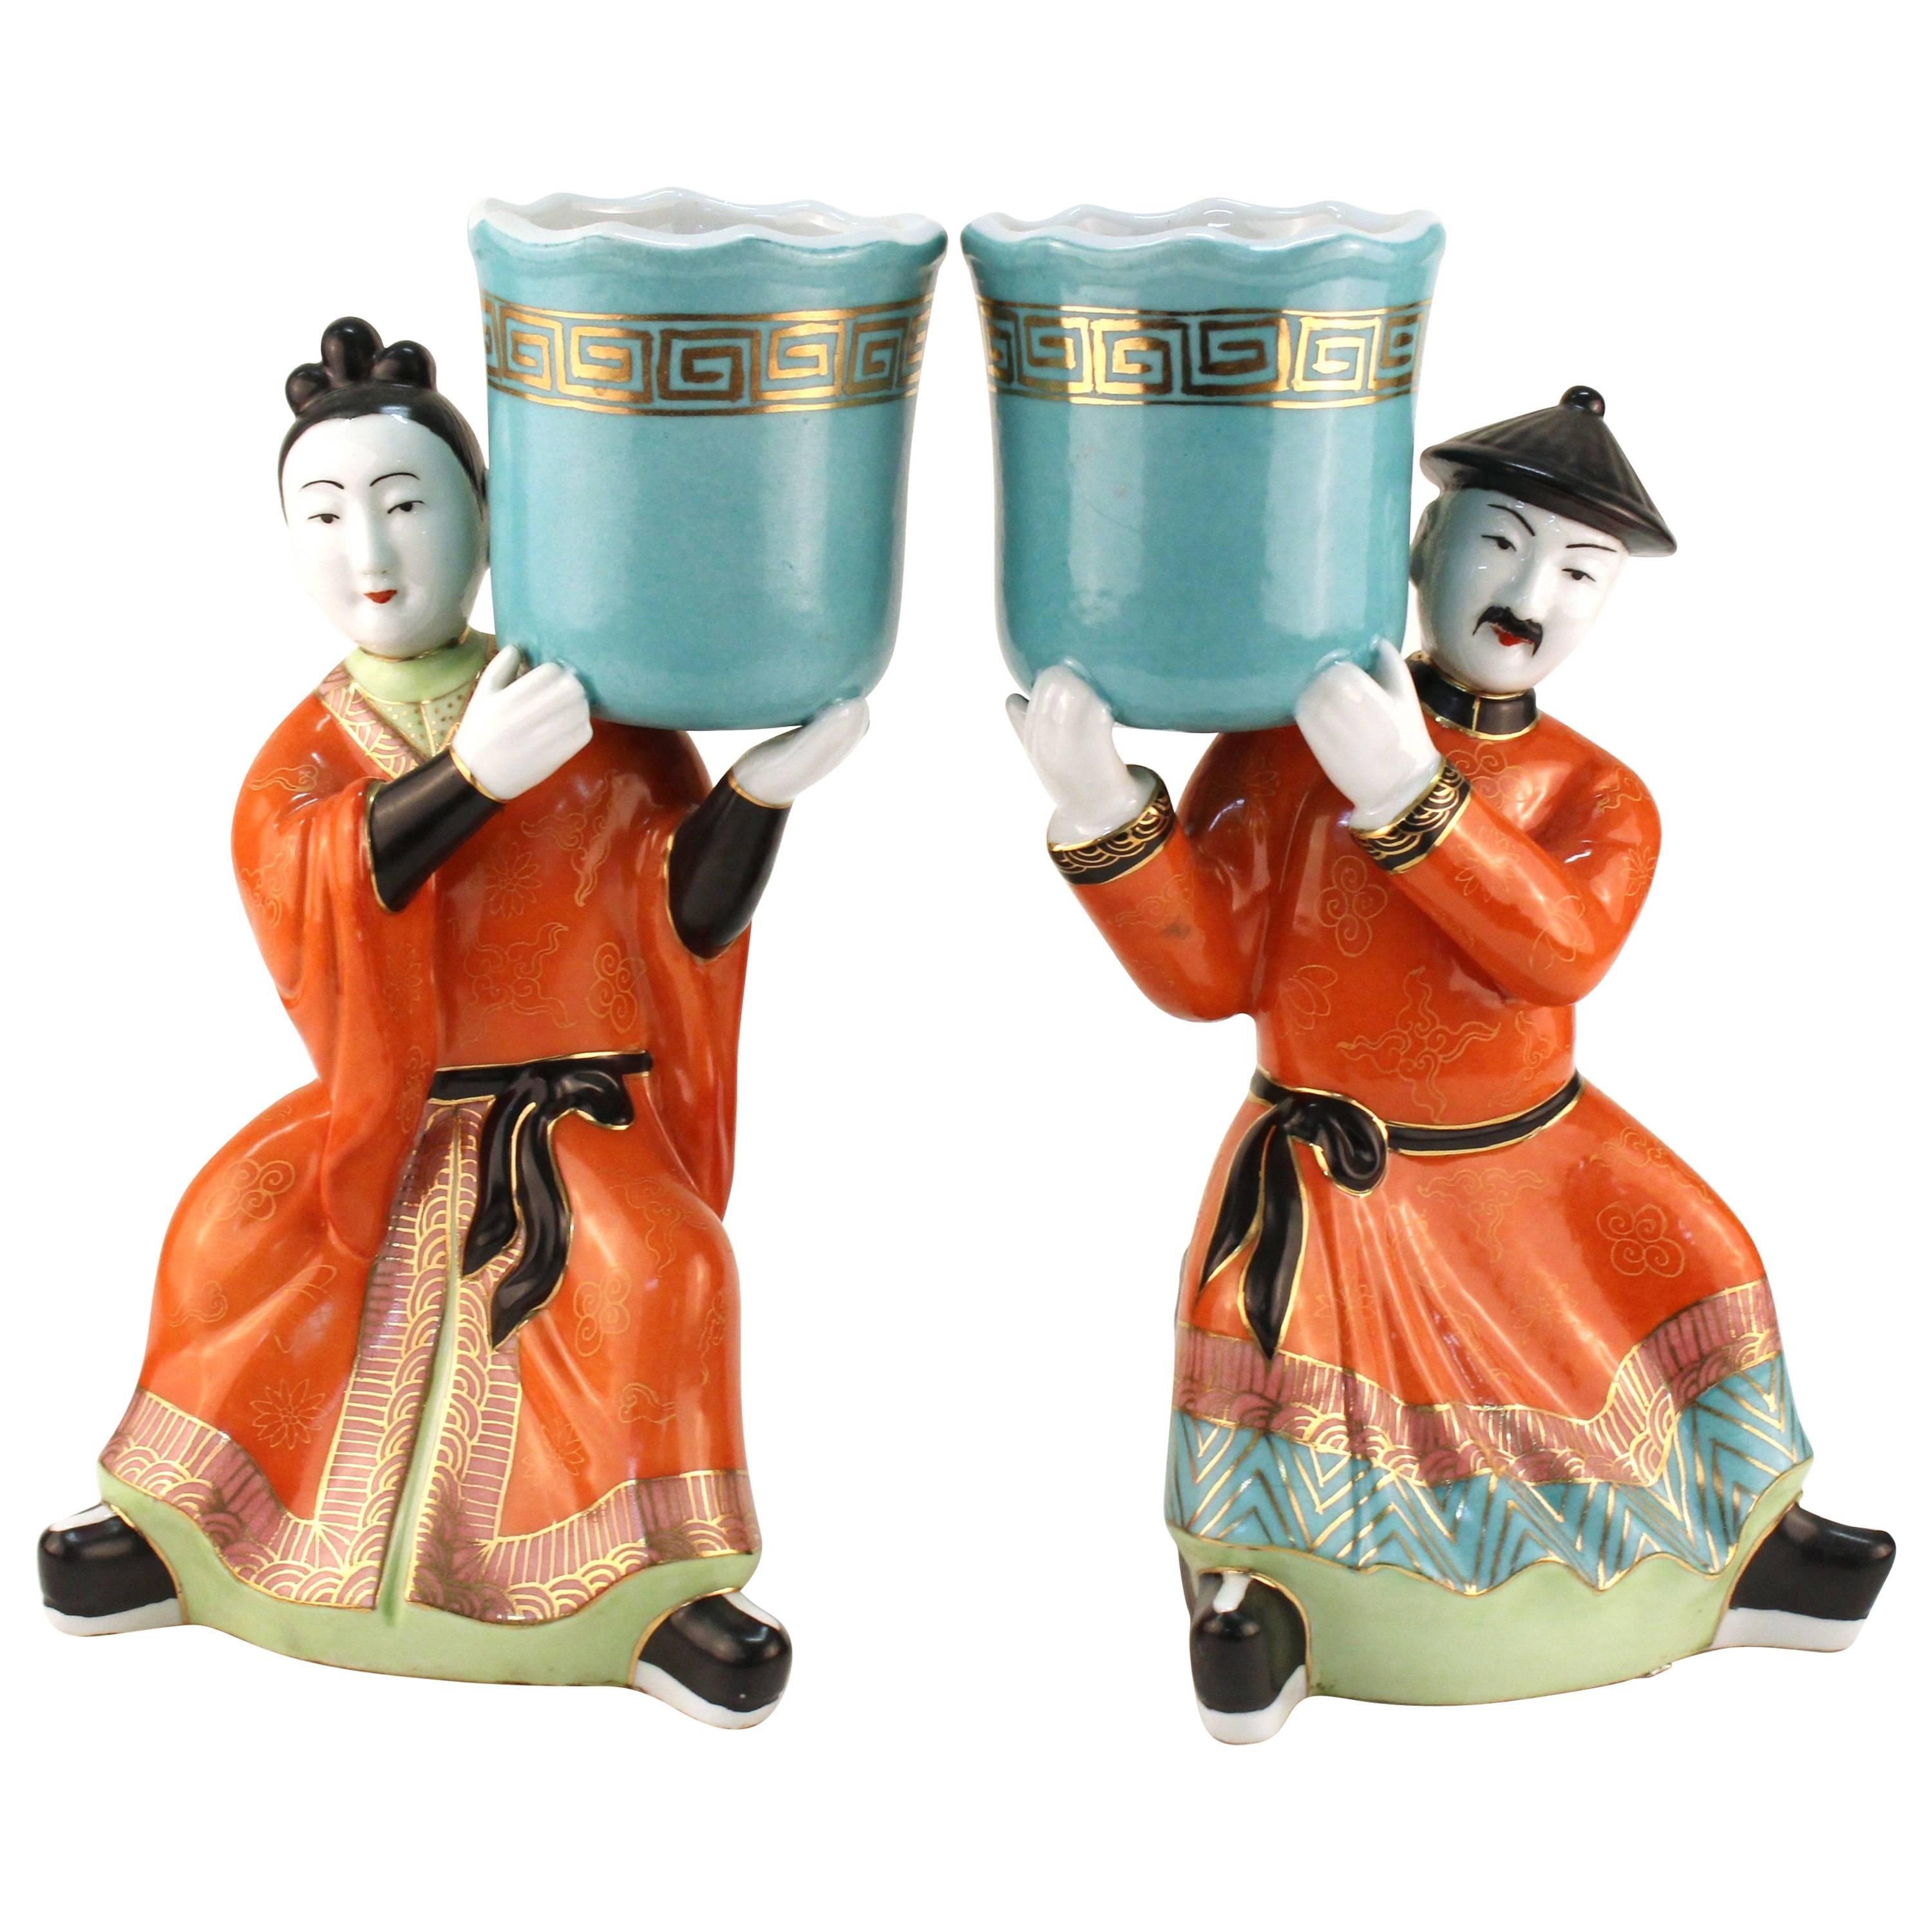 Gumps Ceramic Chinoiserie Figures